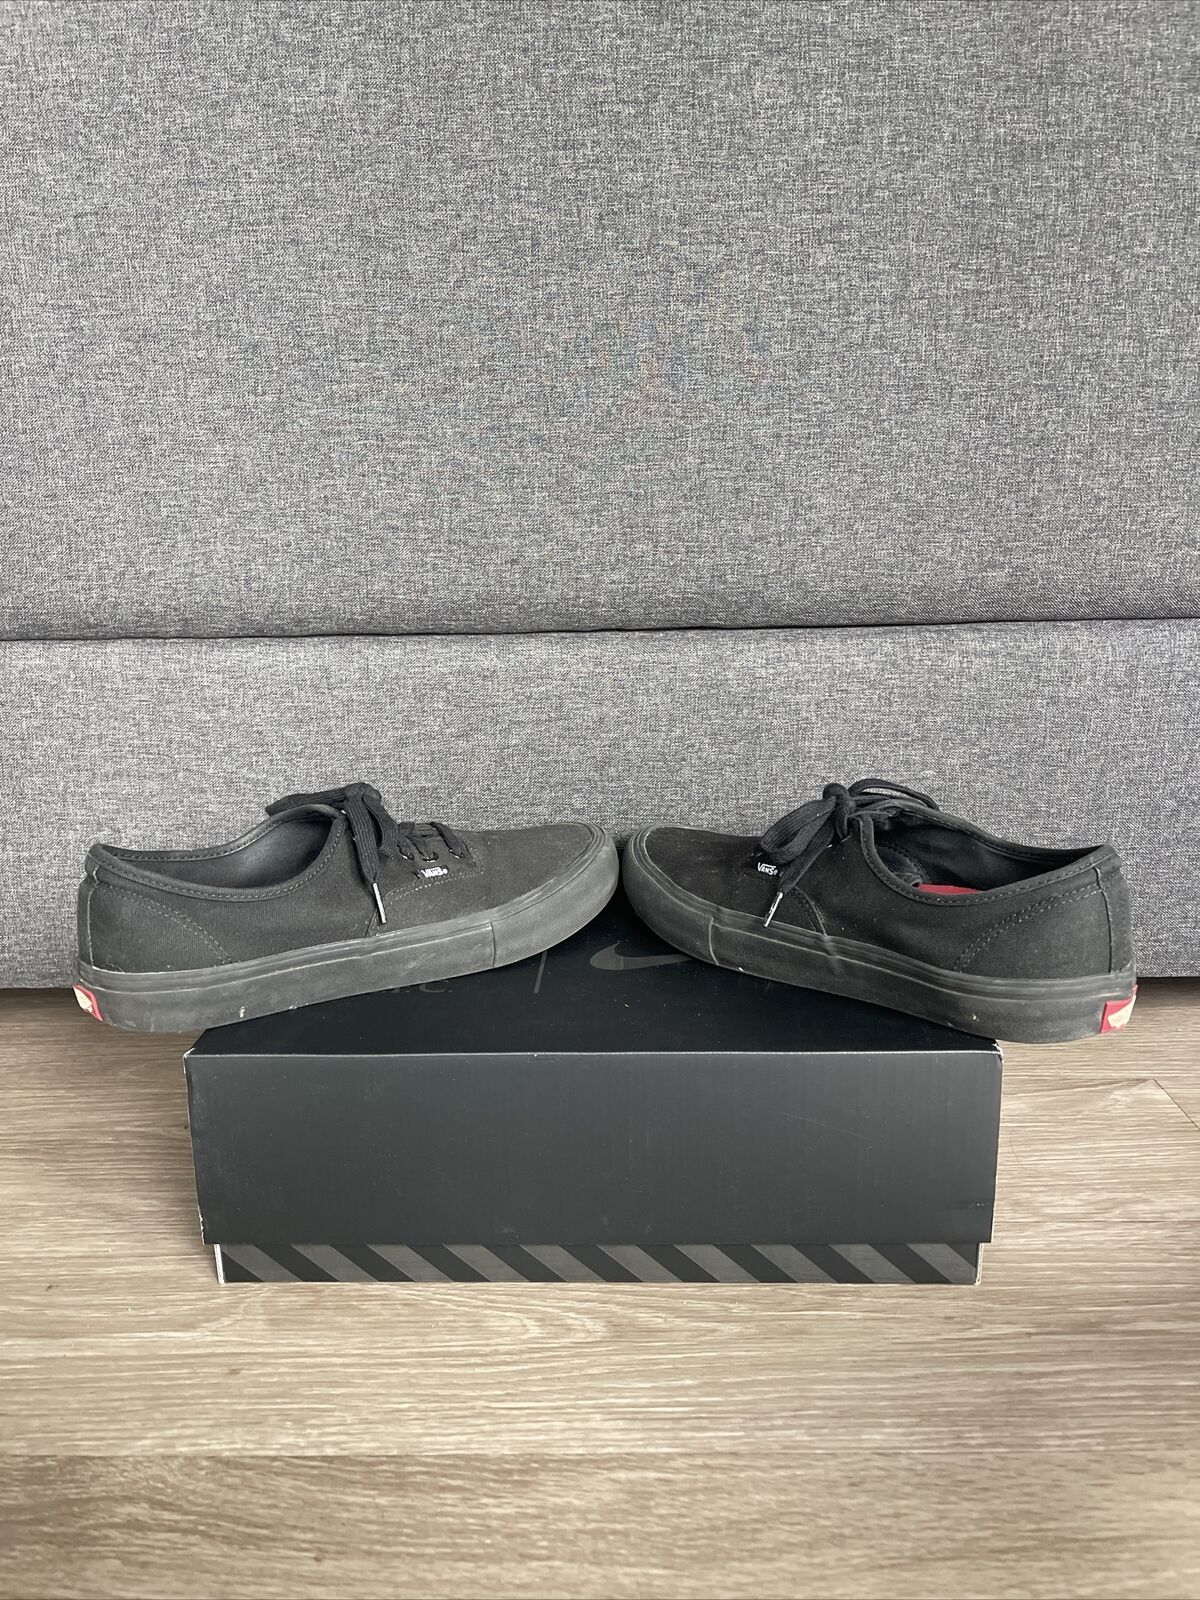 Vans Black Low Men’s Shoe Sz 11 - NO BOX - image 3